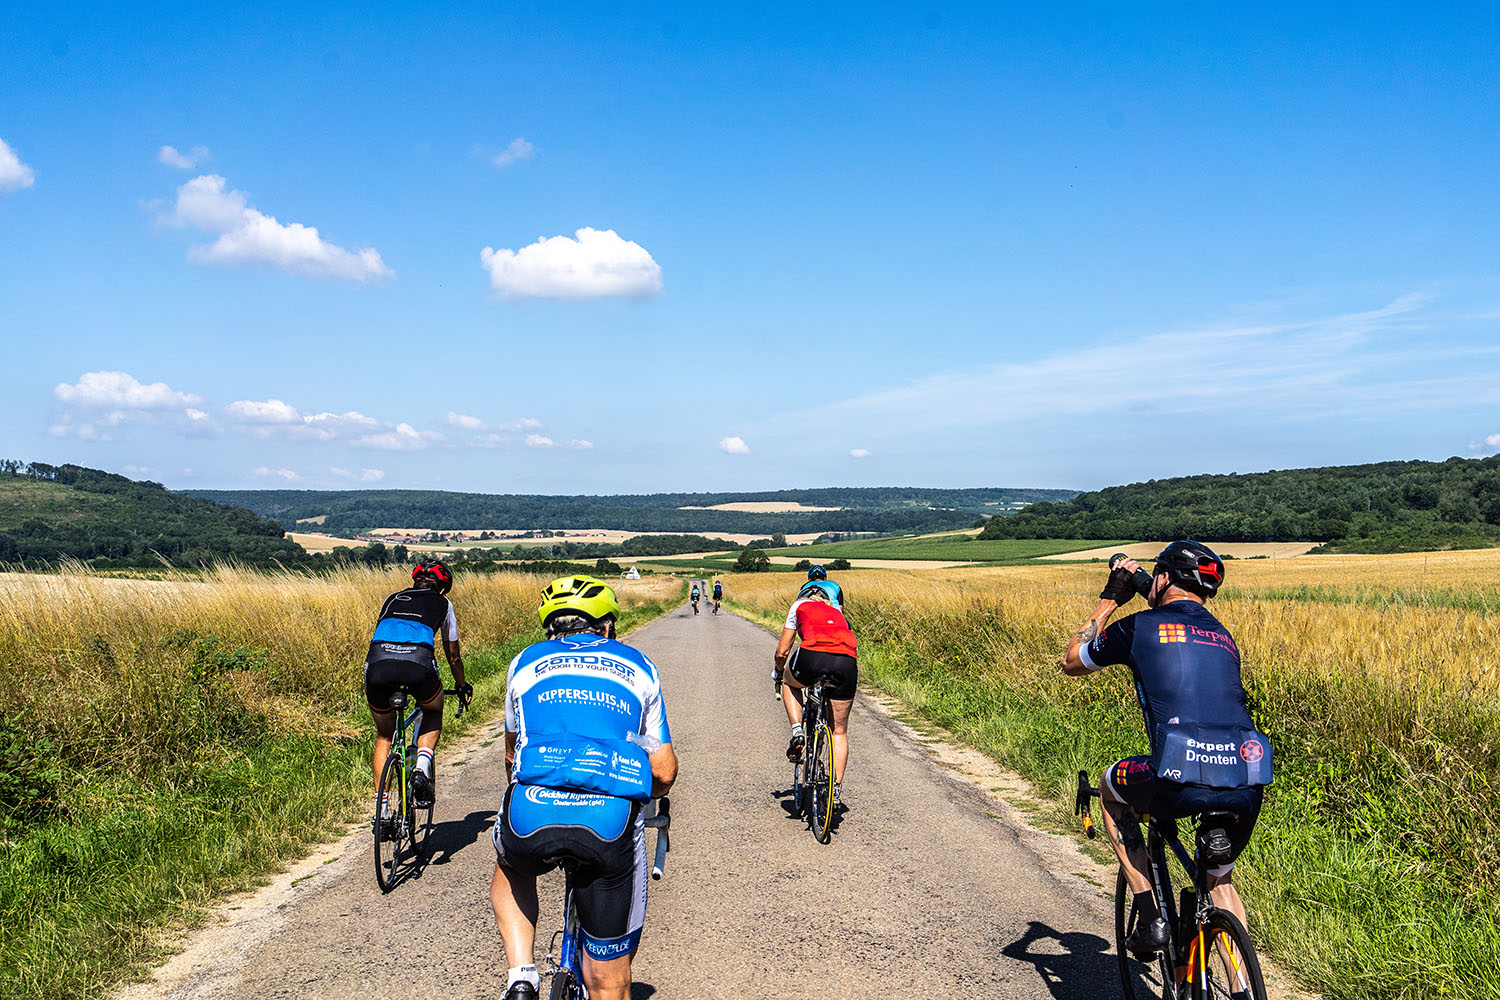 Five Countries fietsers genieten van uitzicht frankrijk tijdens fietsreis